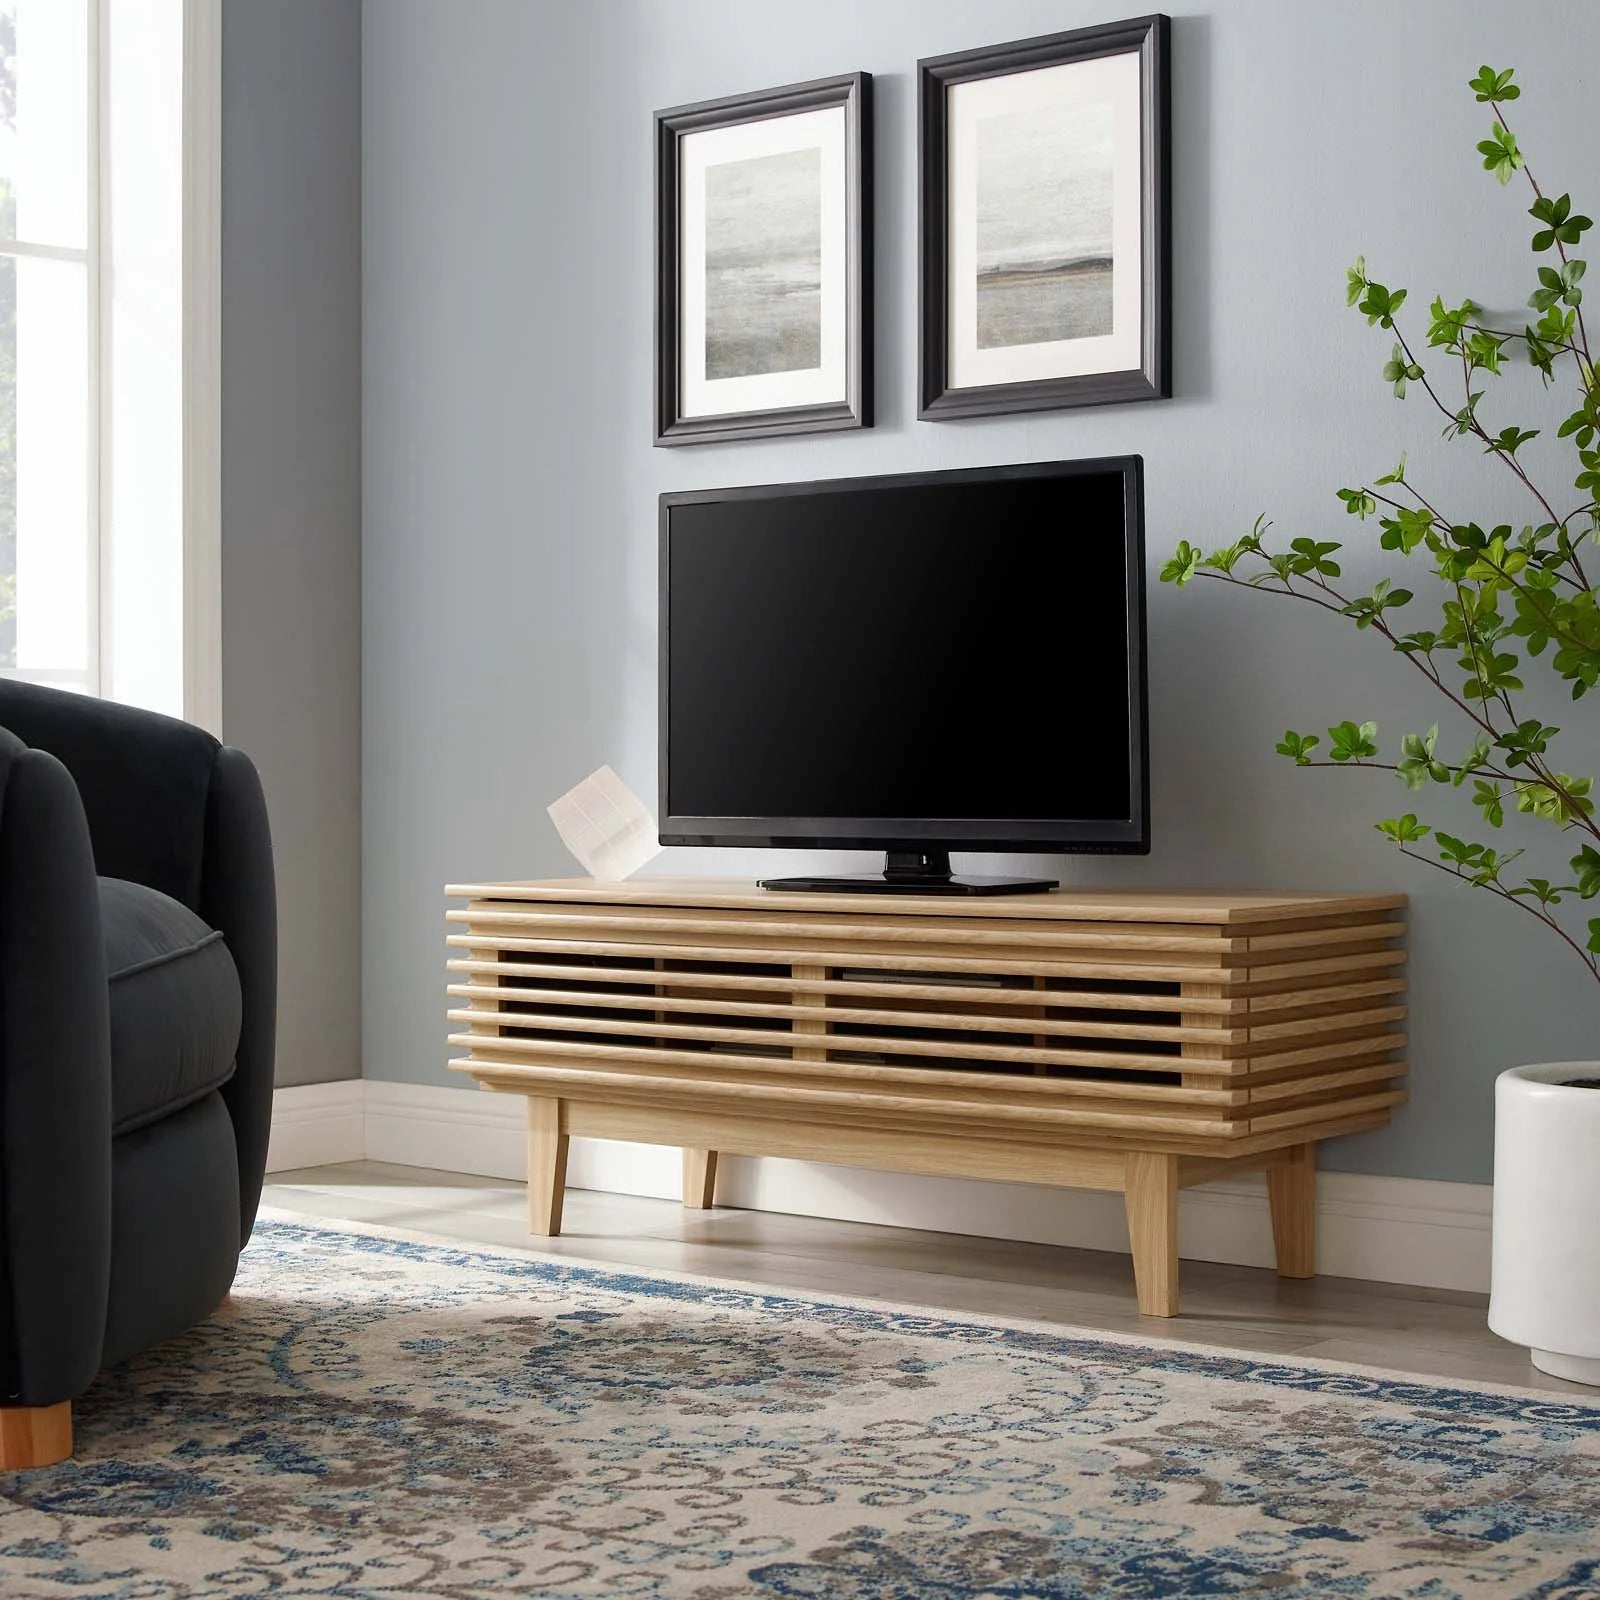 Mueble de 46” para TV Niklas color roble en una sala.